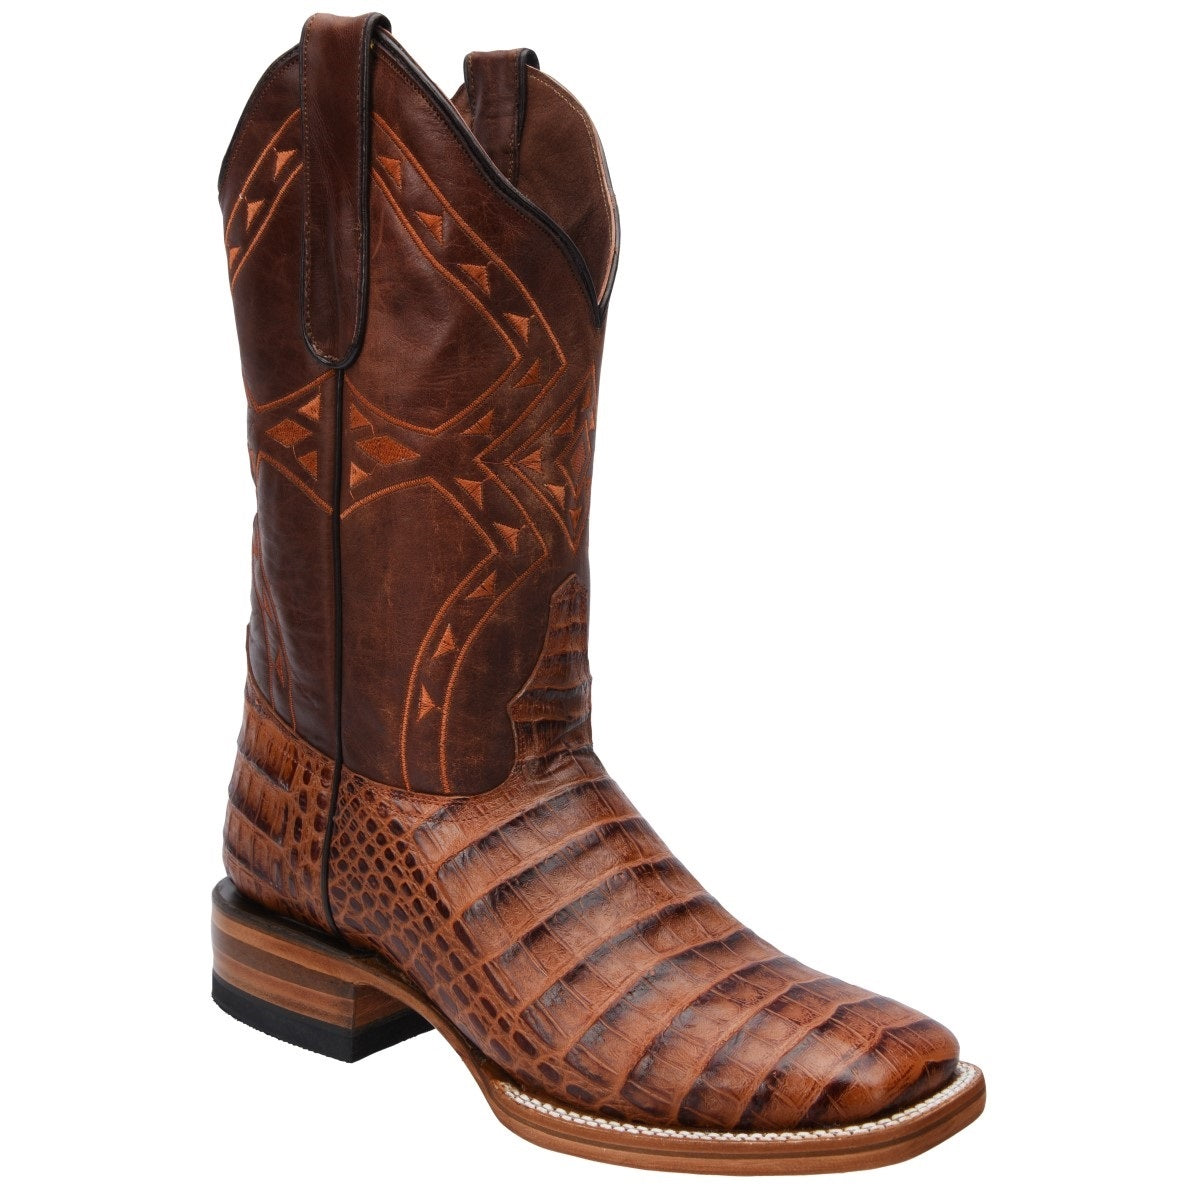 Botas Vaqueras TM-WD0360 - Western Boots